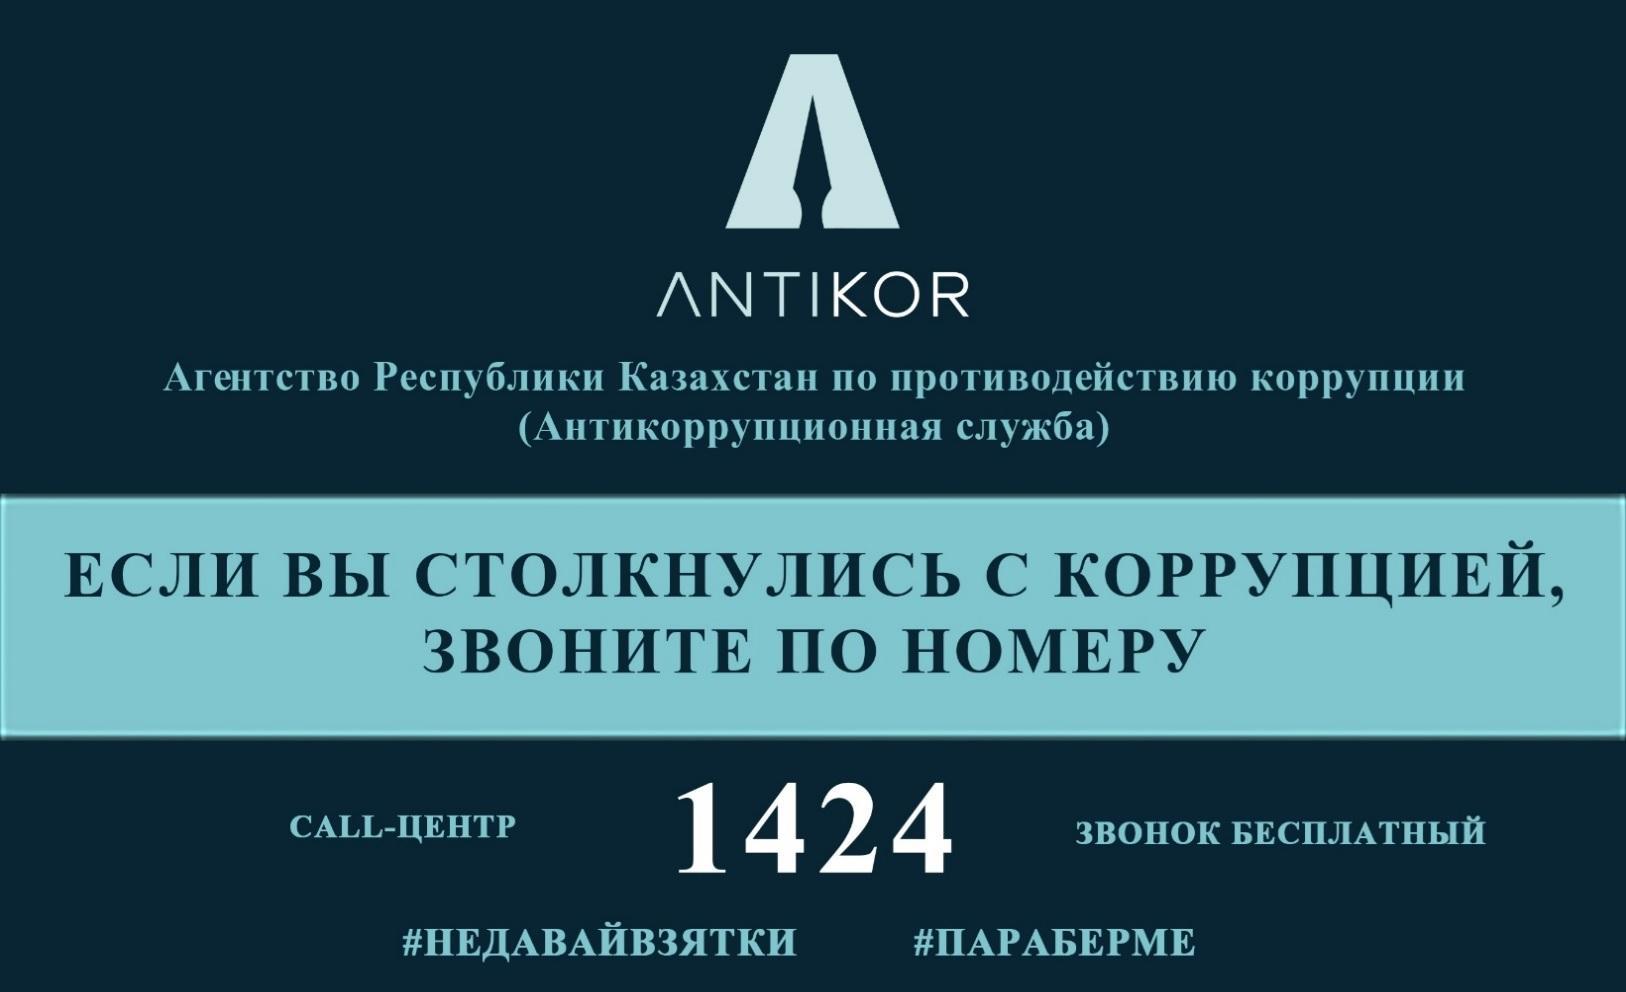 КГУ ОШ№189 Отчет по антикоррупционной  деятельности «Саналы ұрпақ» за  2020 год